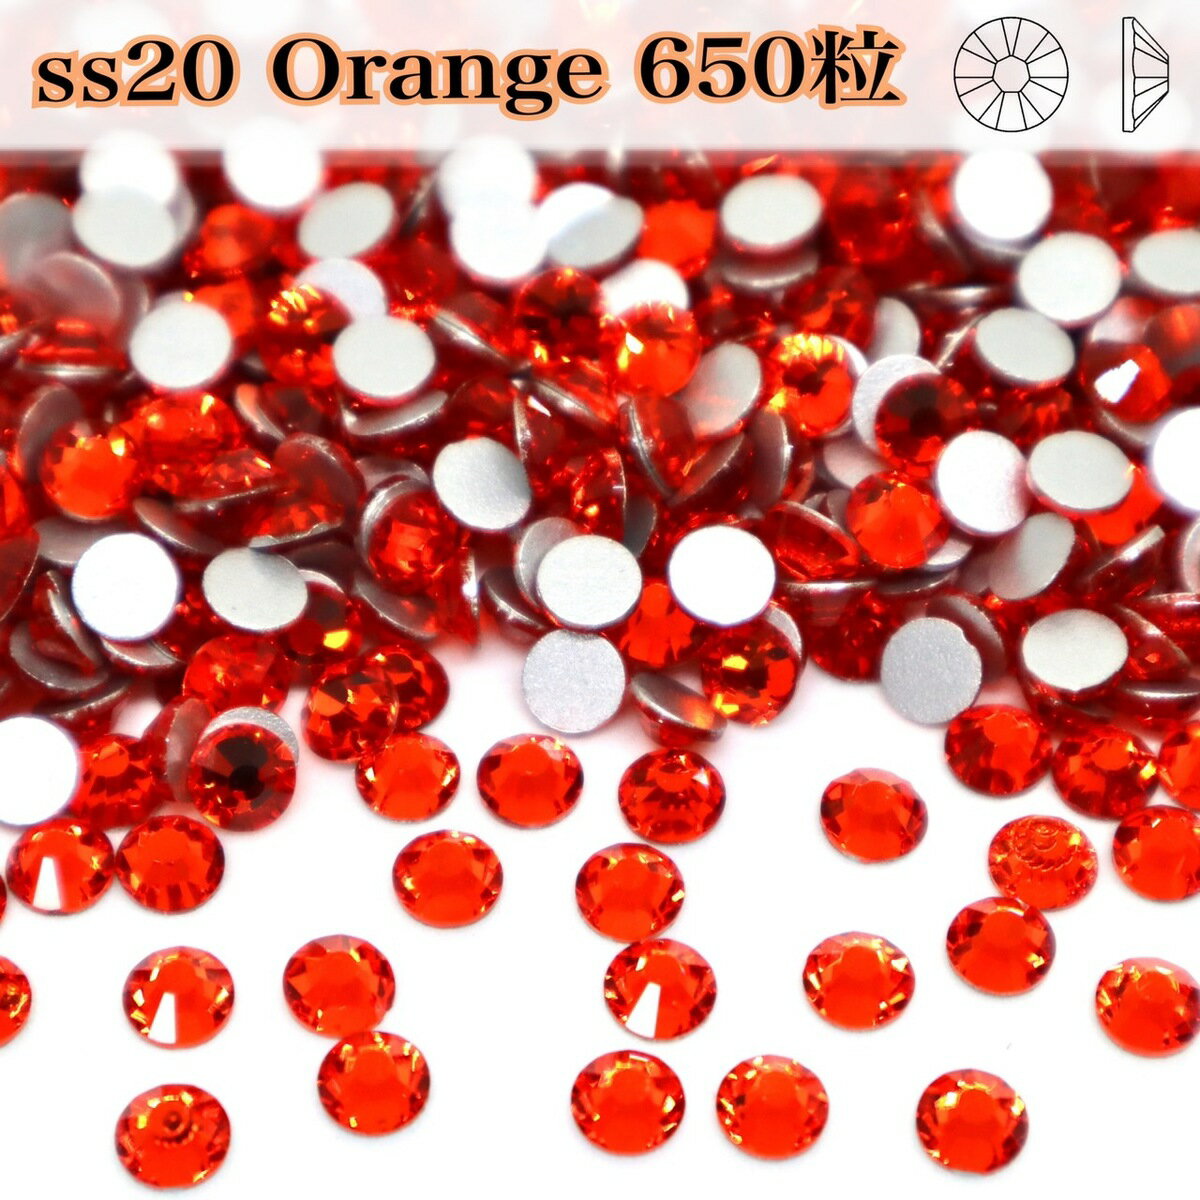 【ss20　orange　オレンジ　650粒　】ガラスビジュー　ガラスストーン　ラインストーン　レオタード製作 ☆ガラスストーン☆ ガラスストーン　ss20 ガラスストーンですので樹脂のラインストーンよりも輝度があり綺麗です。接着剤でつけるタイプになります。スワロフスキーの代用品などとして衣装制作などにお役立てください。●オレンジ●ss20/4.6~4.8mm●650粒通信環境により写真の見え方に違いがある場合がございますがご了承ください。☆サイズ、カラーの間違いのないようにご確認の上ご購入下さい。※安価でご提供する為海外製品となります。スレや欠け、割れ小傷などがある場合がございます。ご了承下さい※ホットフィックスラインストーンではありません 樹脂よりも輝度の高いガラスストーン 使いやすい接着剤タイプ 多彩なカラーバリエーション スワロフスキーの代用品をお探しの方☆ 手作りで衣装制作をしている方★ ガラスストーンをお探しの方☆ こんにちは。店長の横尾です。スワロフスキーよりもコスパ良く、輝度があり代用品にできるような商品を販売しています。輝く作品のお手伝いになれば嬉しいです。 2〜4営業日内に発送します。 1